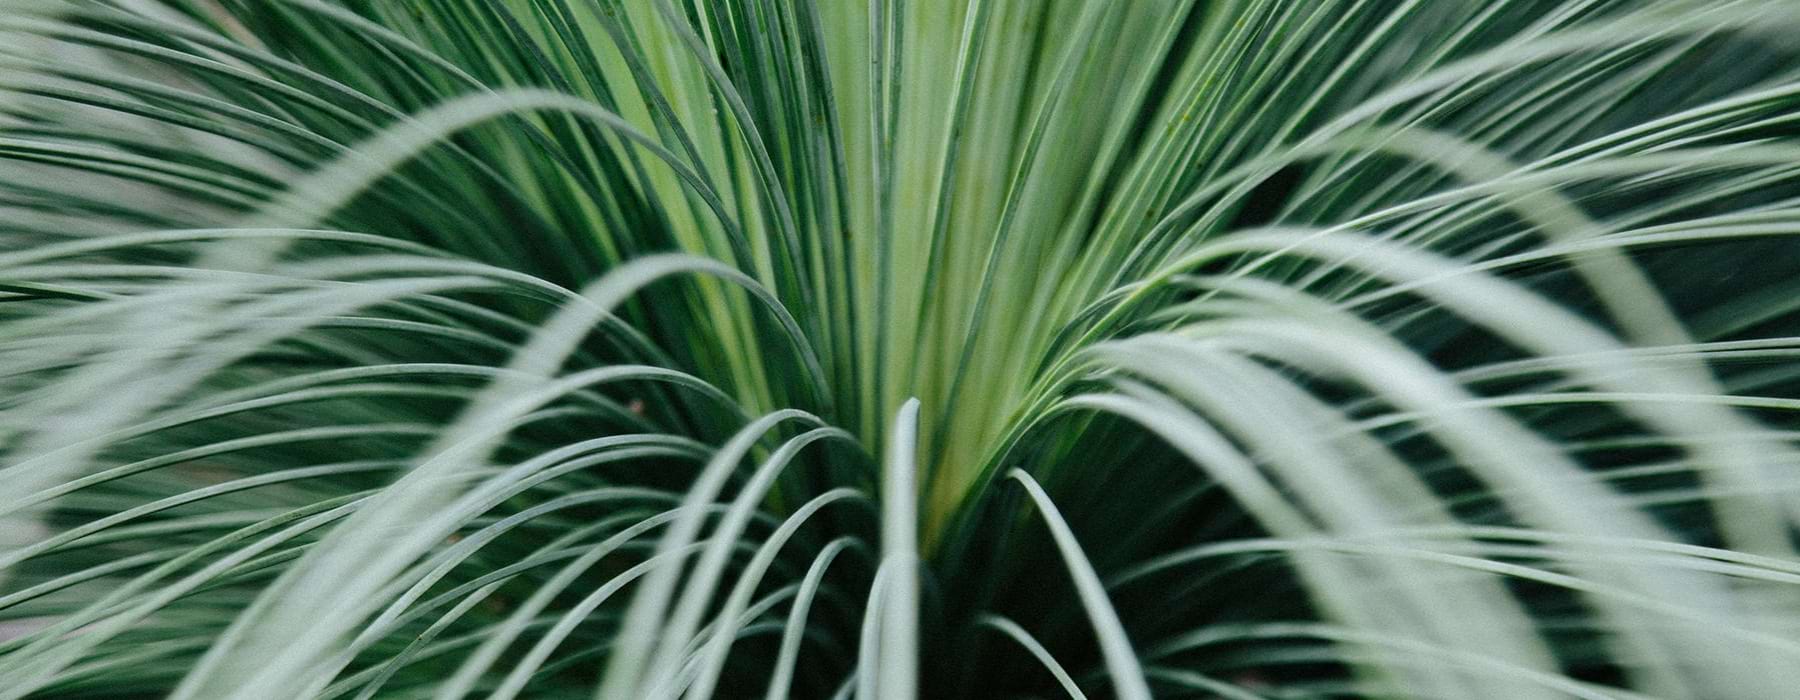 Closeup of a palm tree